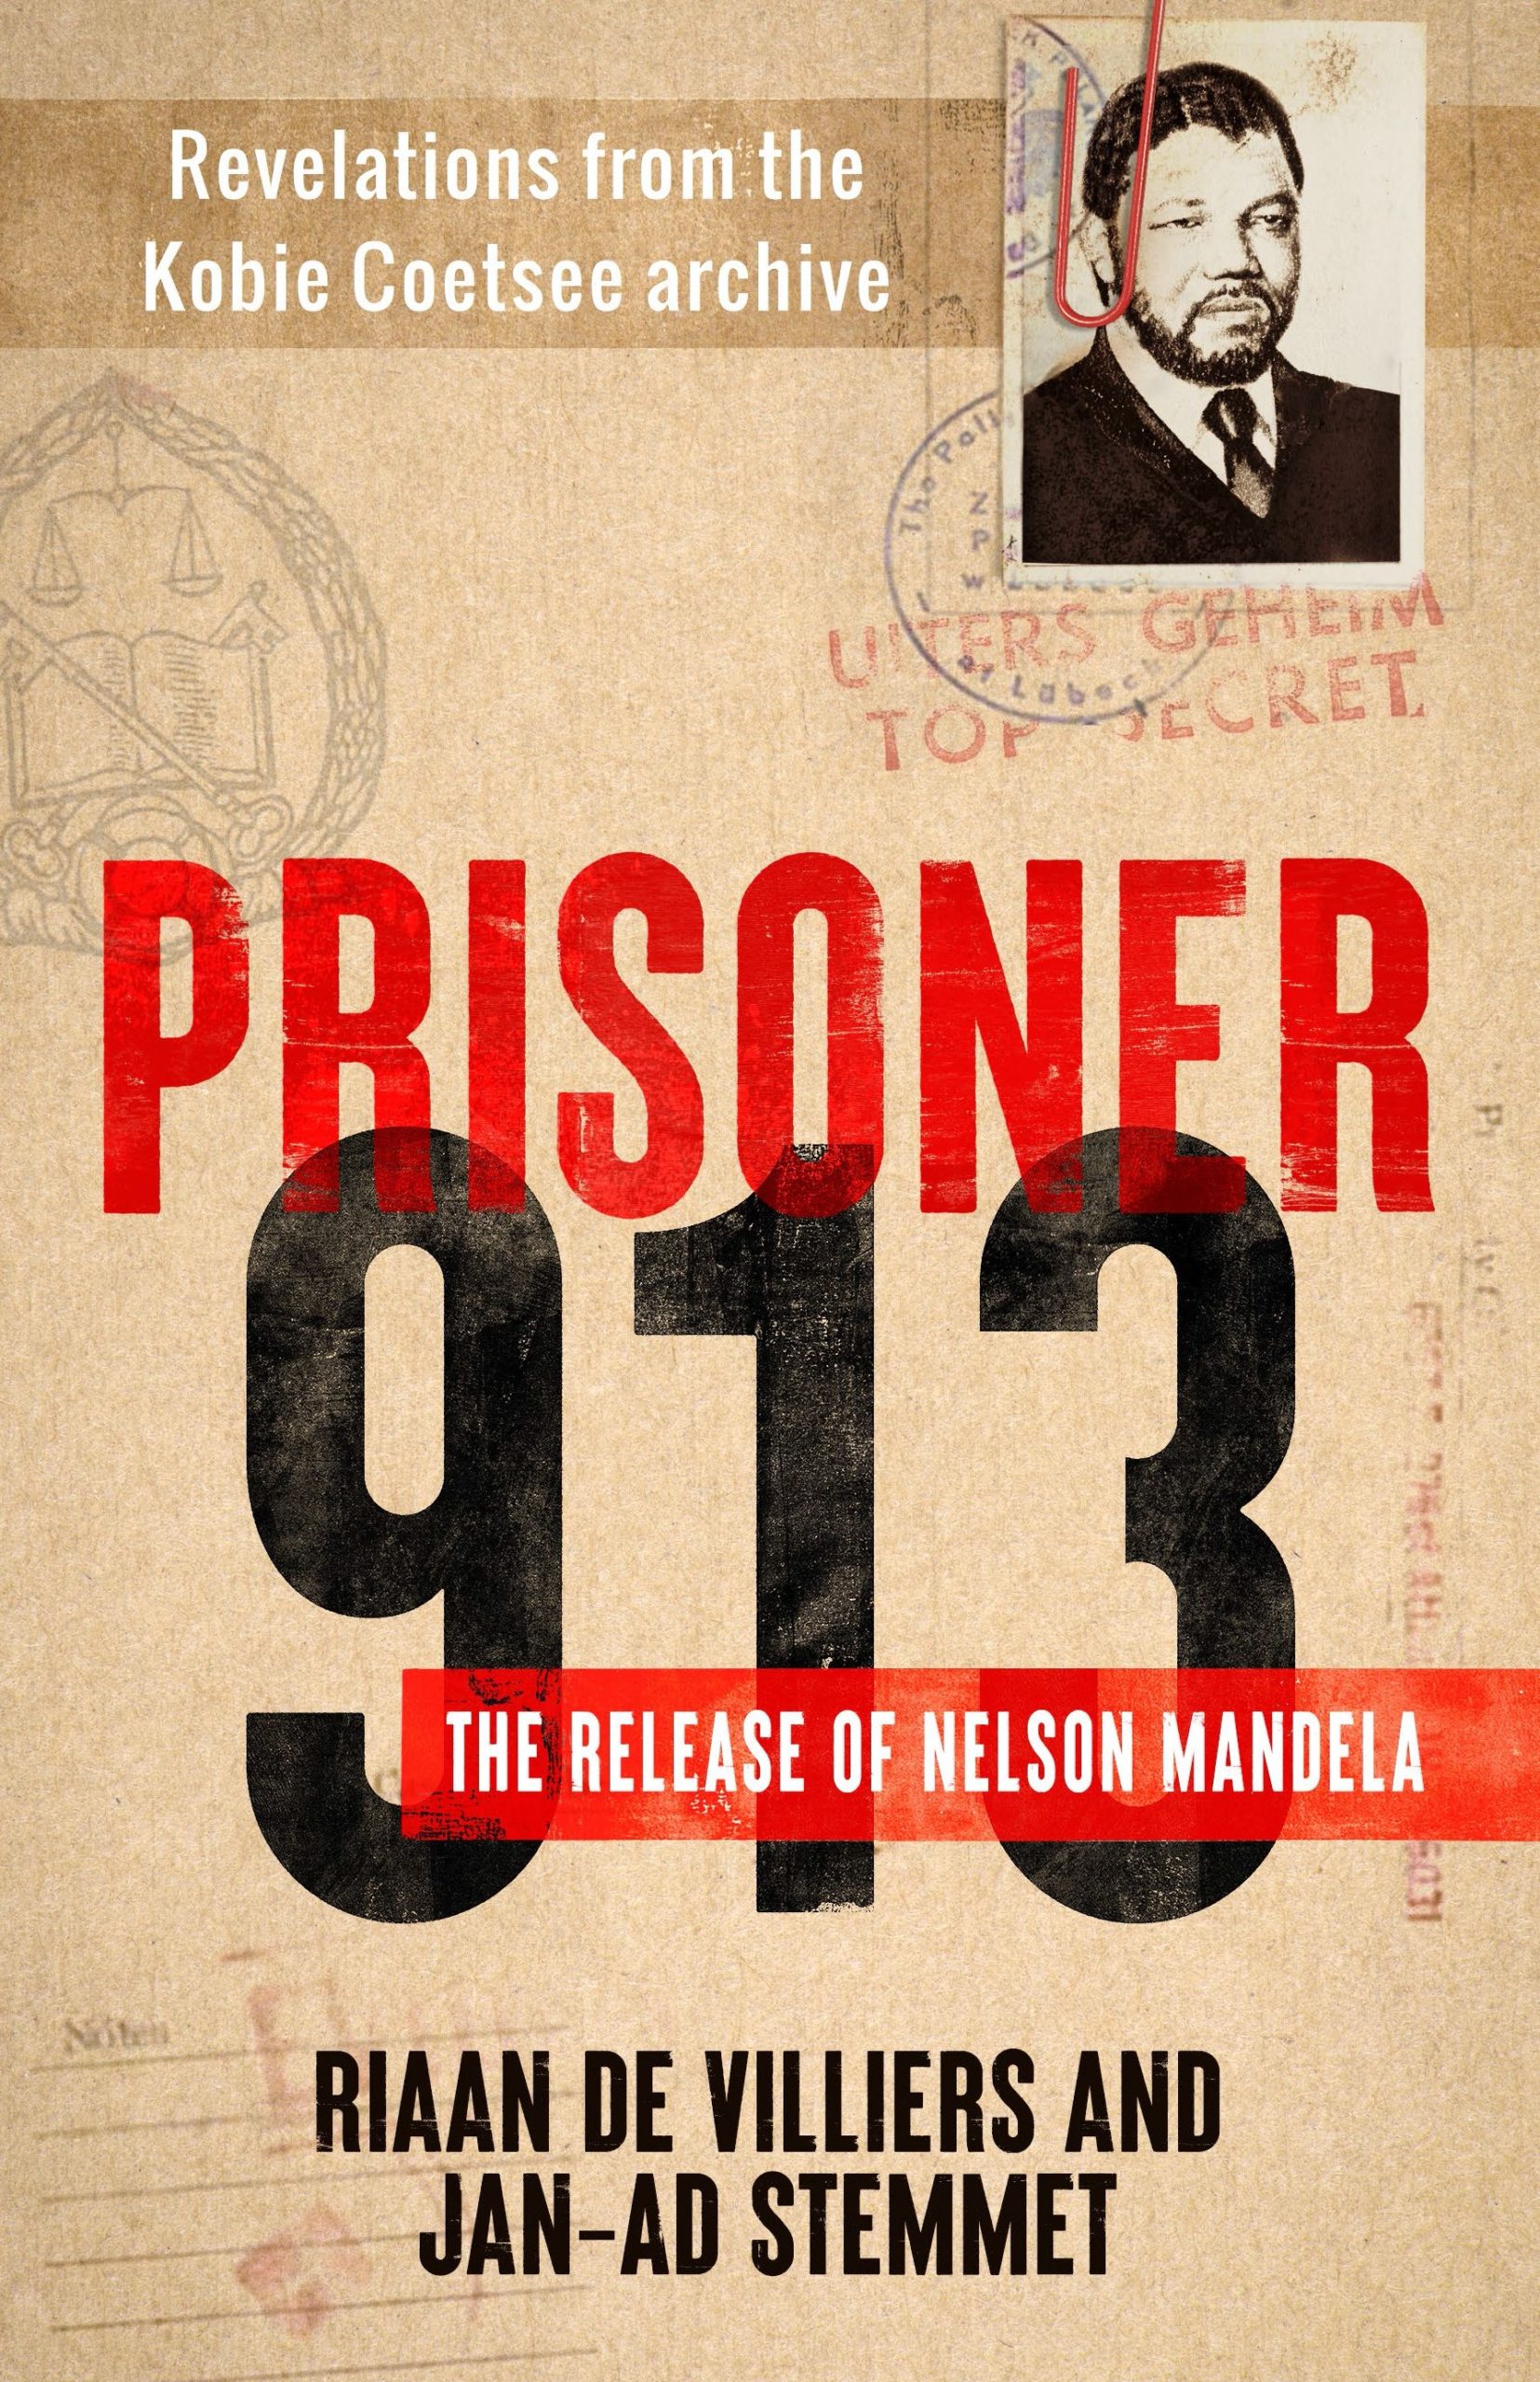 囚犯 913 缩放 DAILY MAVERICK 168：两本新书提供了内幕人士对 Nelson 和 Winnie 狂暴而持久的爱情的看法